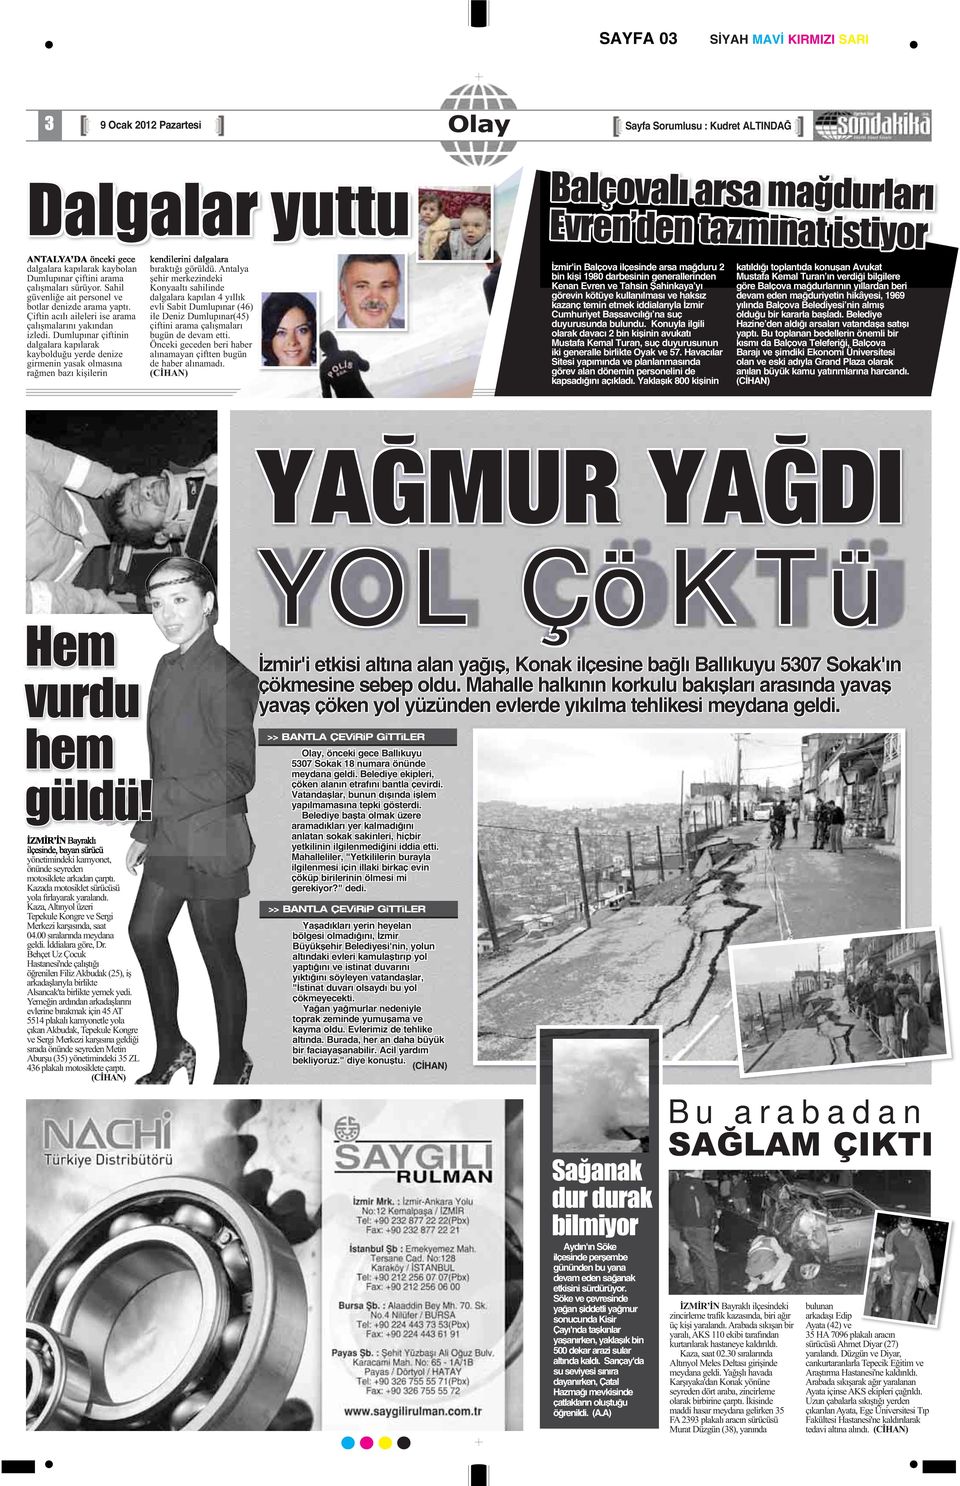 Konuyla ilgili olarak davacı 2 bin kişinin avukatı Mustafa Kemal Turan, suç duyurusunun iki generalle birlikte Oyak ve 57.